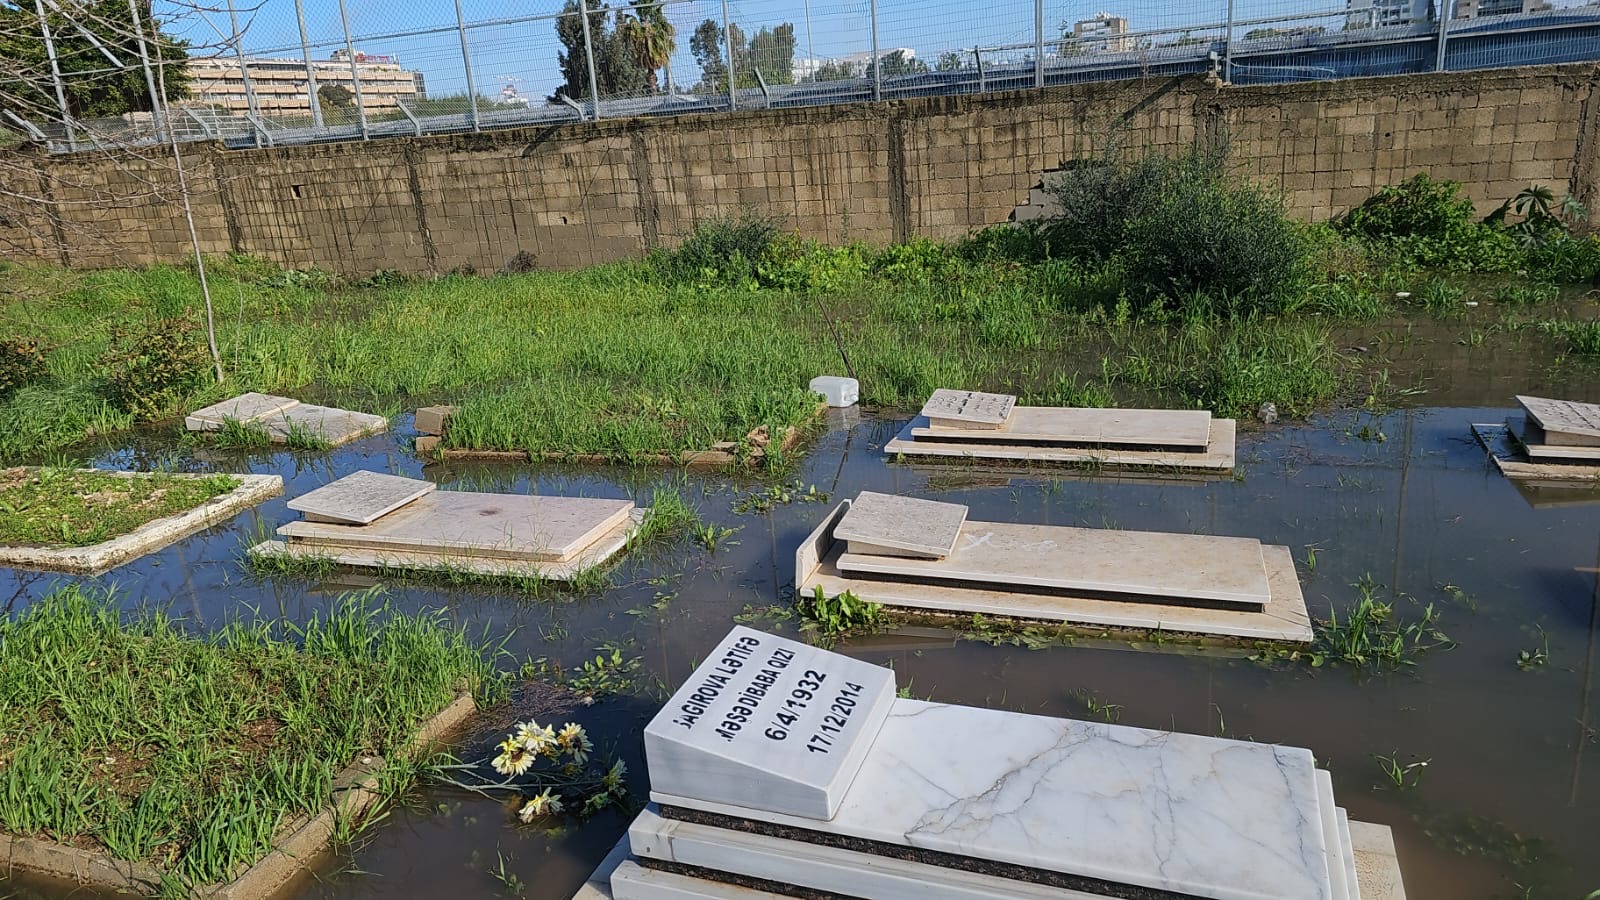 فيديو: مياه الأمطار تغمر عشرات القبور في الجهة الشرقية لمقبرة طاسو